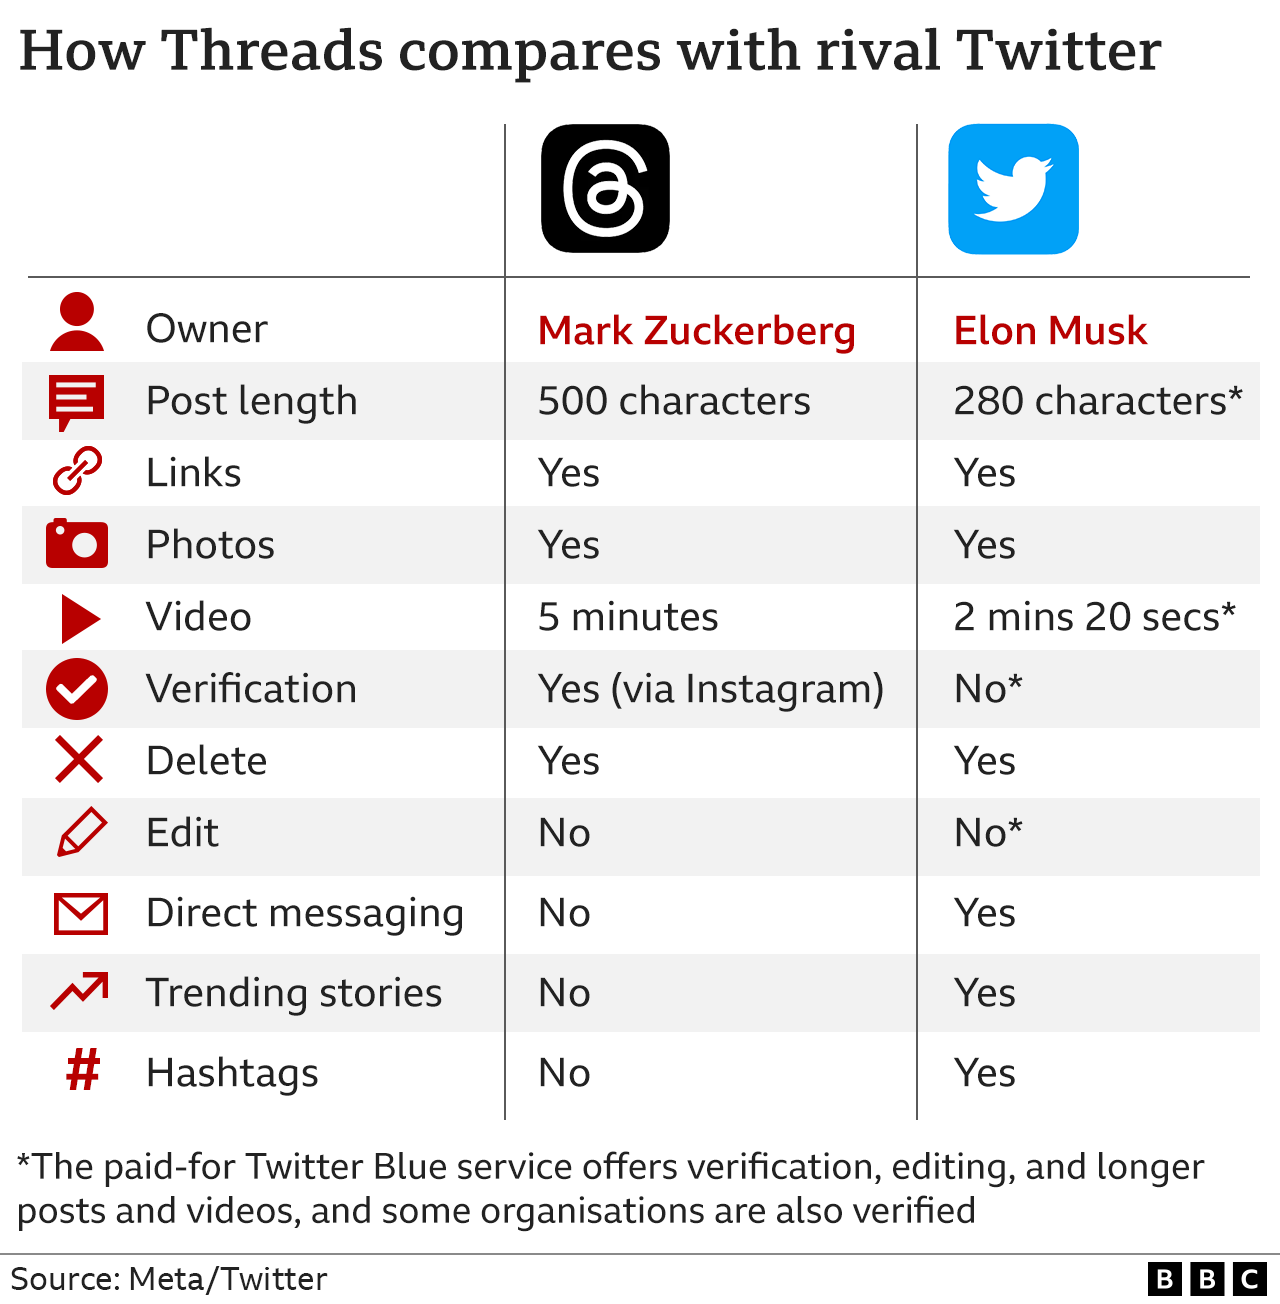 В таблице показано сравнение Threads и Twitter: Threads позволяет размещать сообщения длиной 500 символов по сравнению с 280 в Twitter и 5-минутные видео по сравнению с 2 минутами 20 секундами. Оба разрешают ссылки, фотографии и удаление сообщений, но Twitter разрешает прямой обмен сообщениями, показывает популярные истории и использует хэштеги, которых нет в Threads. У Threads есть верификация, но это одна из услуг, за доступ к которой в Twitter нужно платить, наряду с более длинными сообщениями и видео и функцией редактирования.